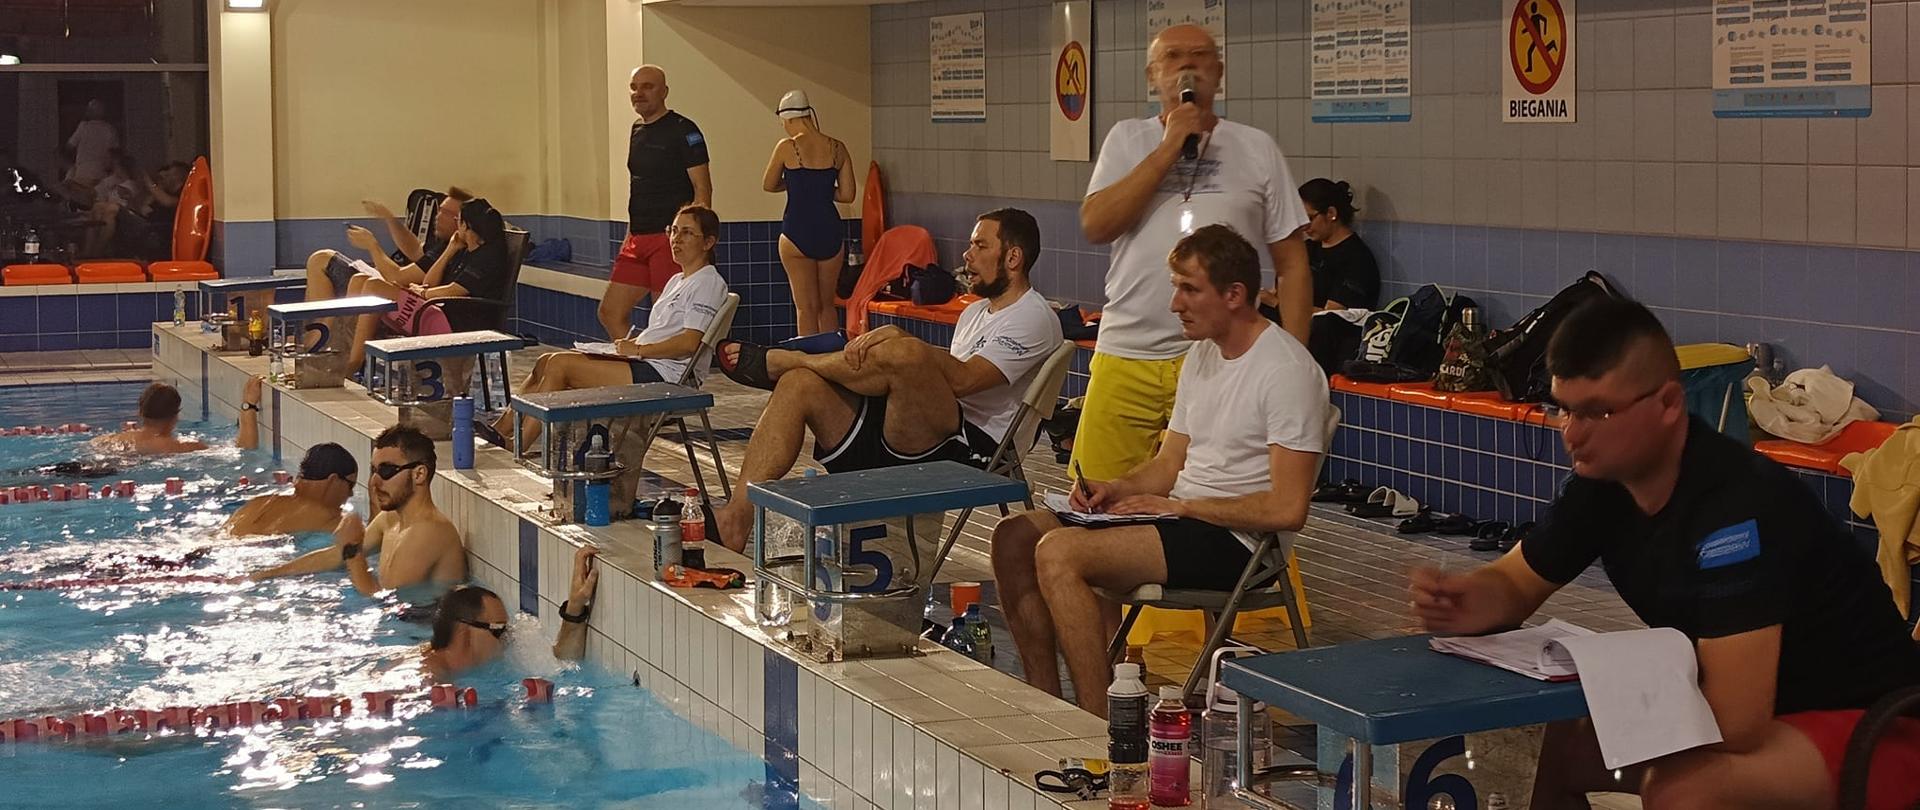 Basen, na miejscach startowych siedzą mężczyźni w strojach kąpielowych zapisujący karty z wynikami, jeden z nich trzyma mikrofom, w basenie widoczni pływacy